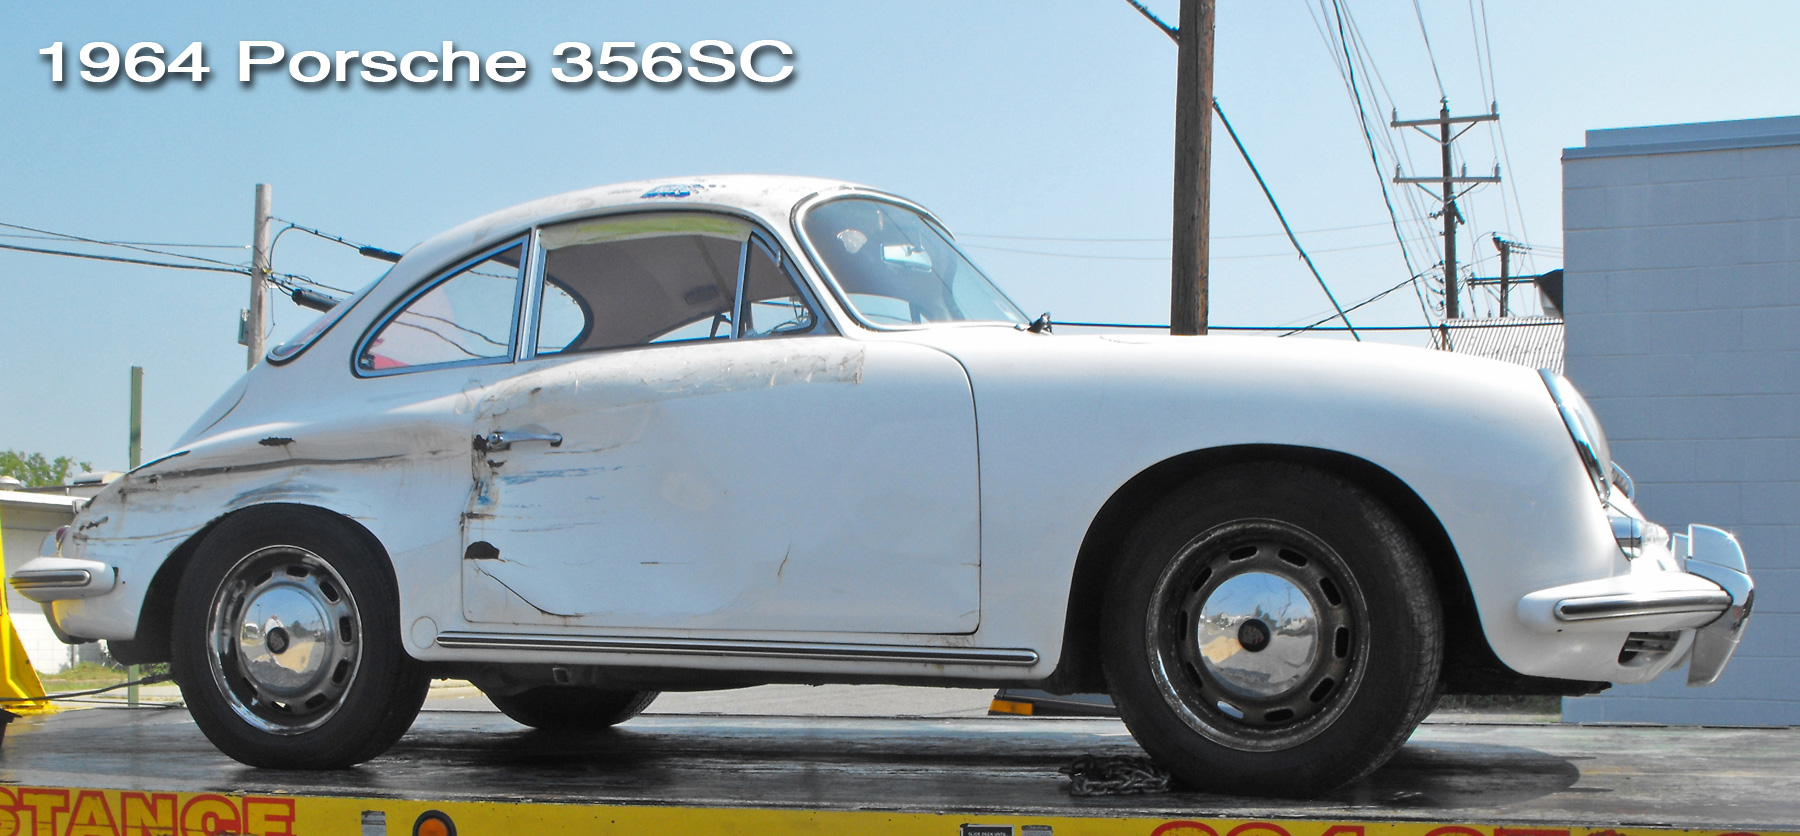 1964 Porsche 356SC restoration header.